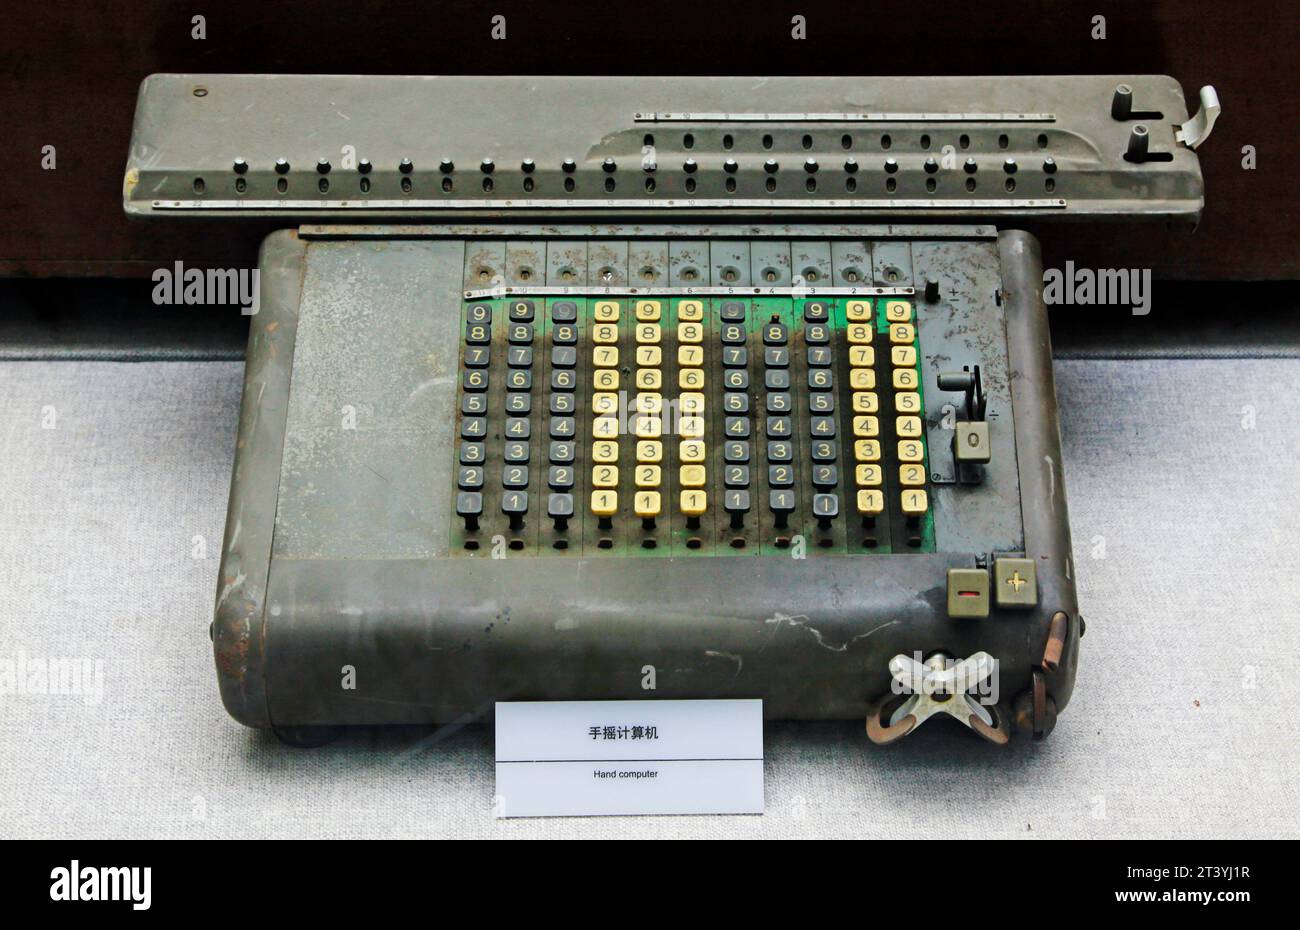 TANGSHAN - NOVEMBRE 16 : l'ordinateur manuel dans le musée Kailuan, 16 novembre 2013, tangshan, province du hebei, chine. Banque D'Images